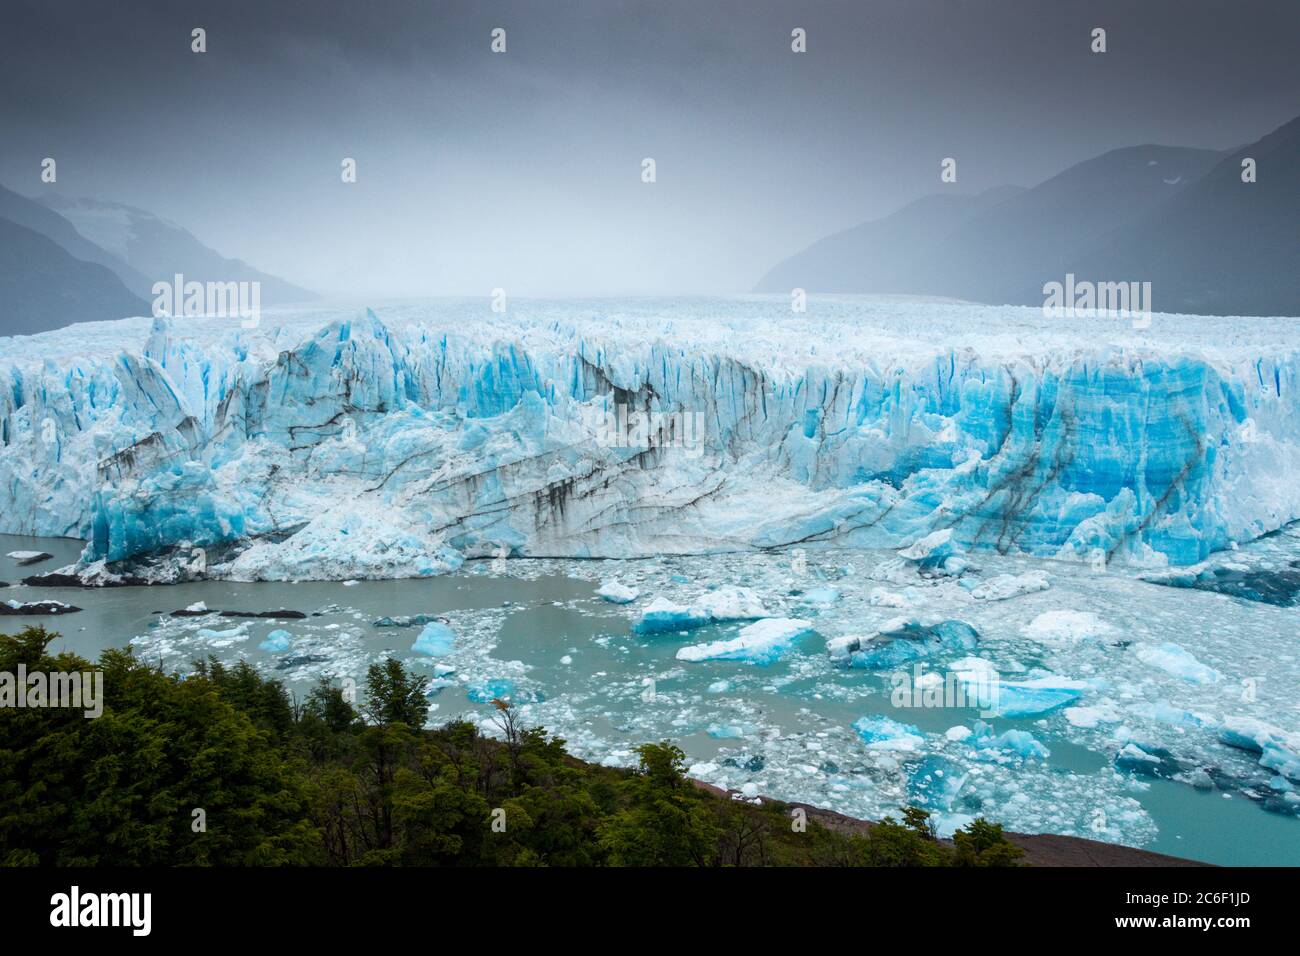 Glaciar Perito Moreno in Patagonia in the Argentinian Andes near El Calafate Stock Photo